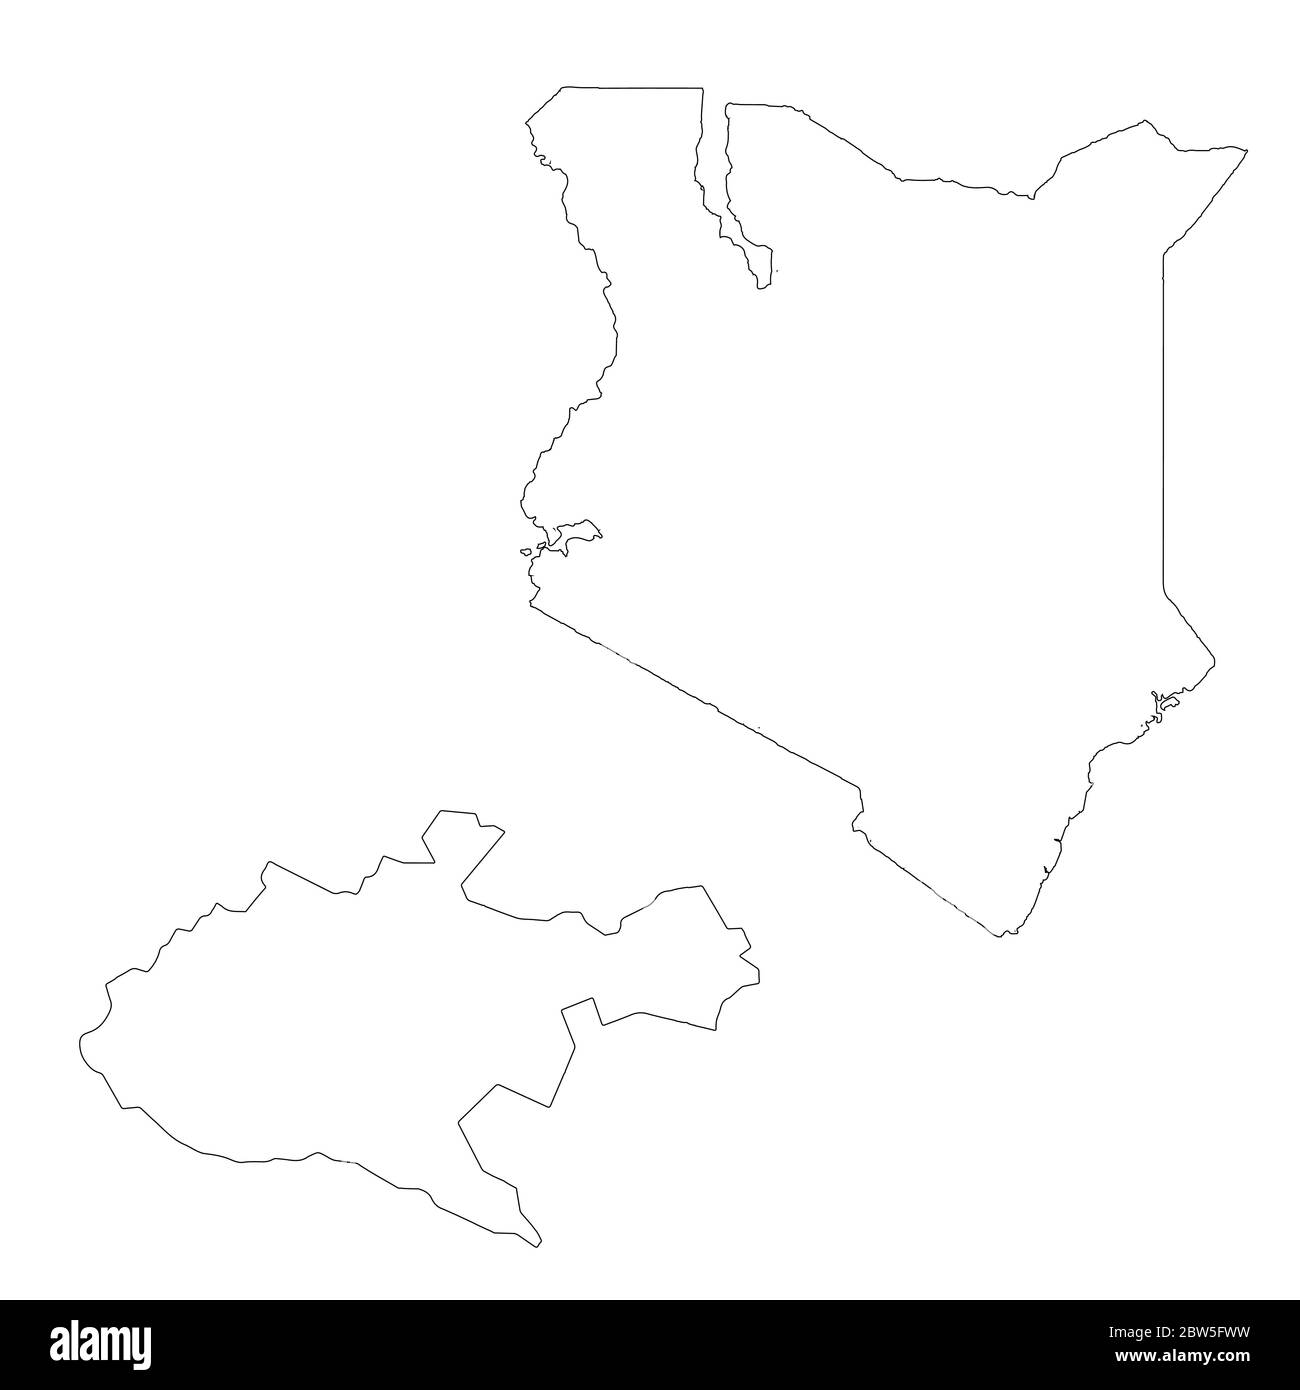 Vektorkarte Kenia und Nairobi. Land und Hauptstadt. Isolierte Vektorgrafik. Übersicht. EPS 10-Abbildung. Stock Vektor